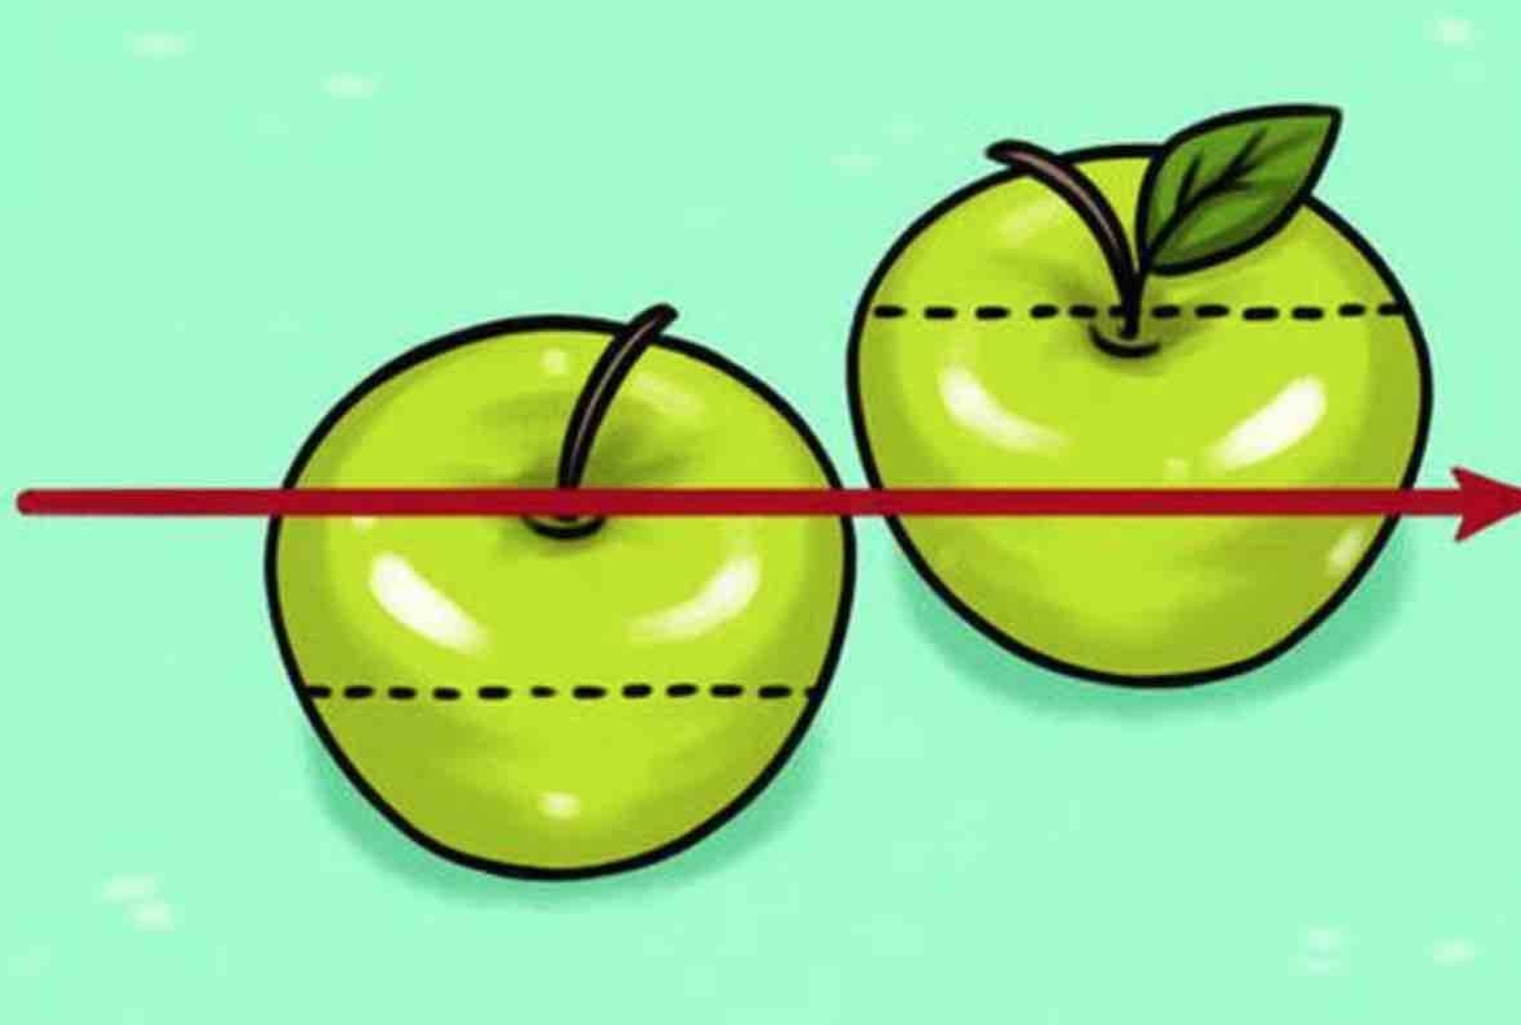 Три яблока равно